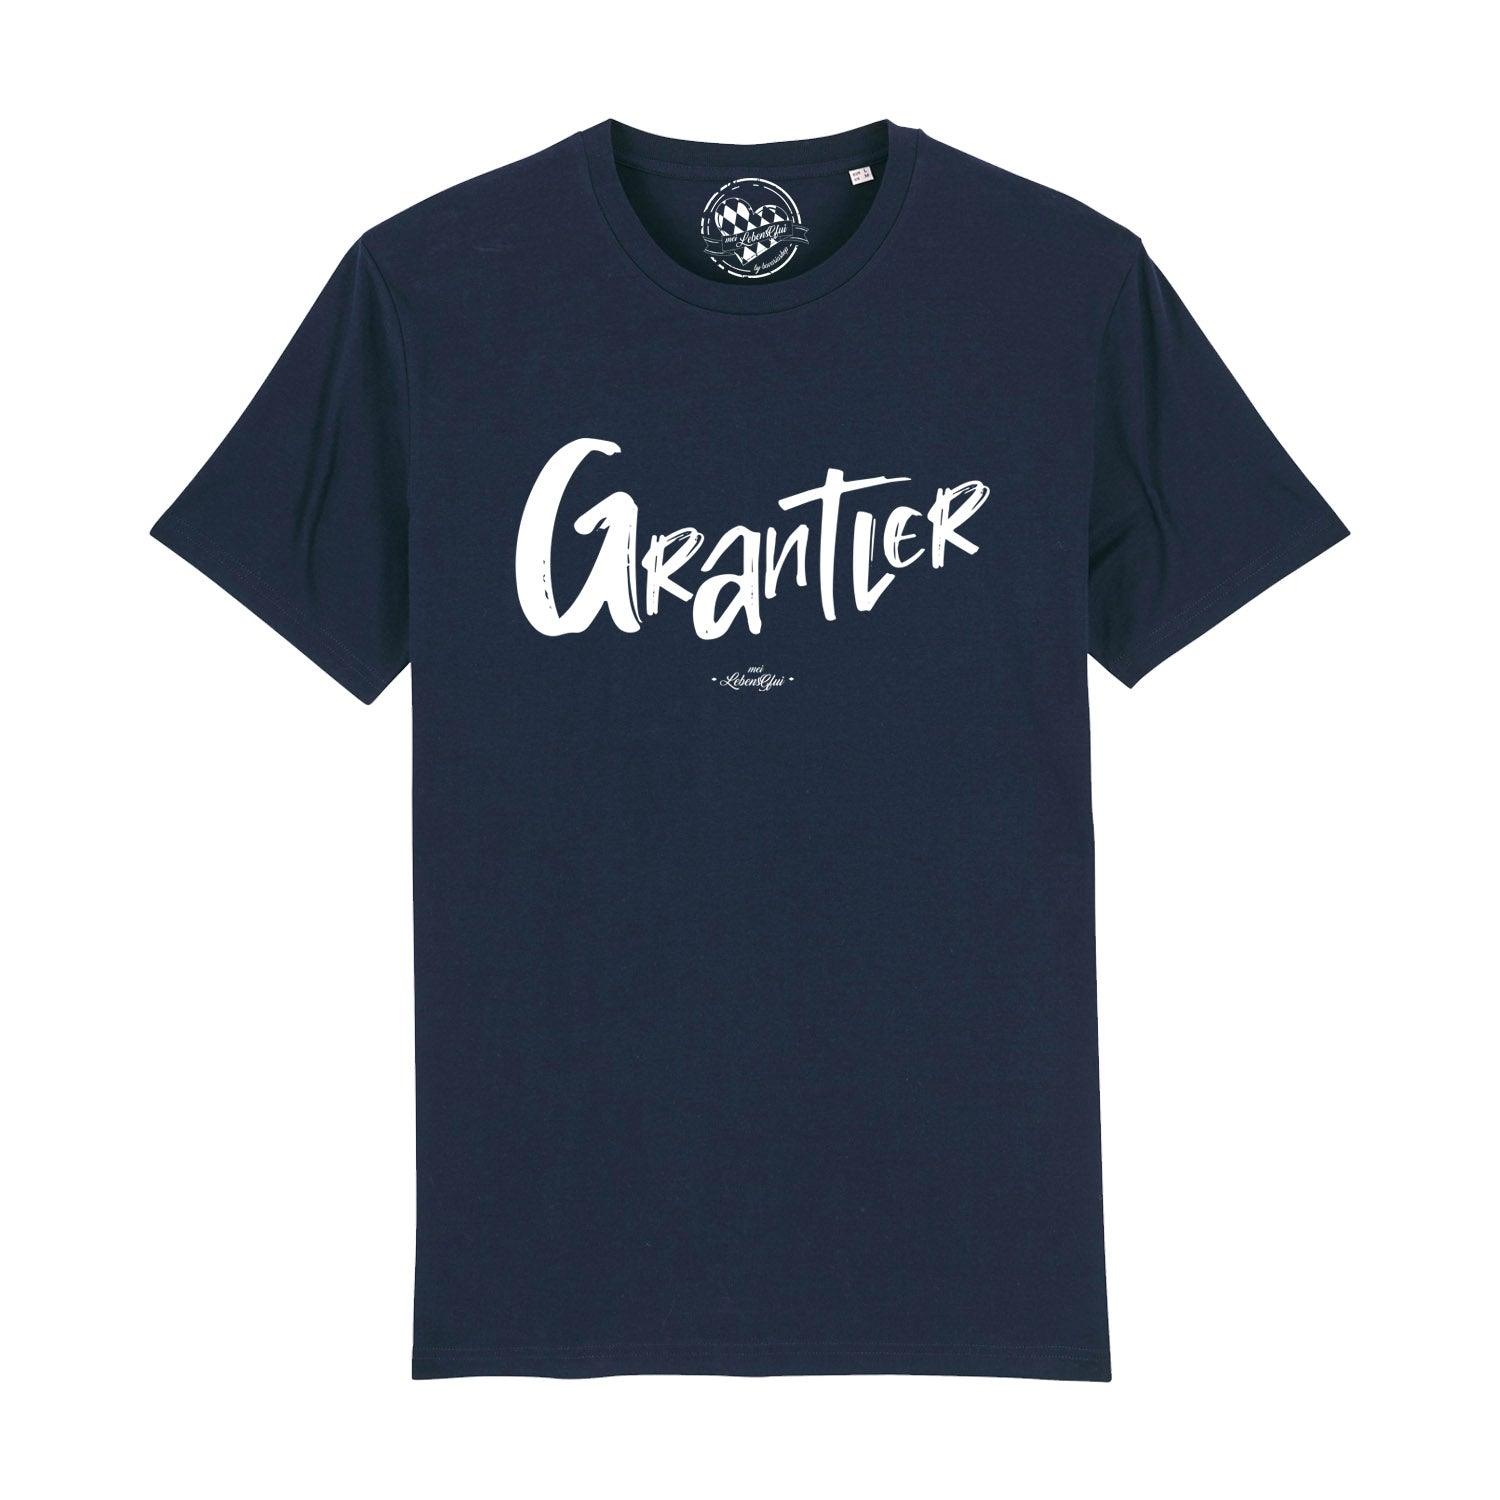 Herren T-Shirt "Grantler" - bavariashop - mei LebensGfui